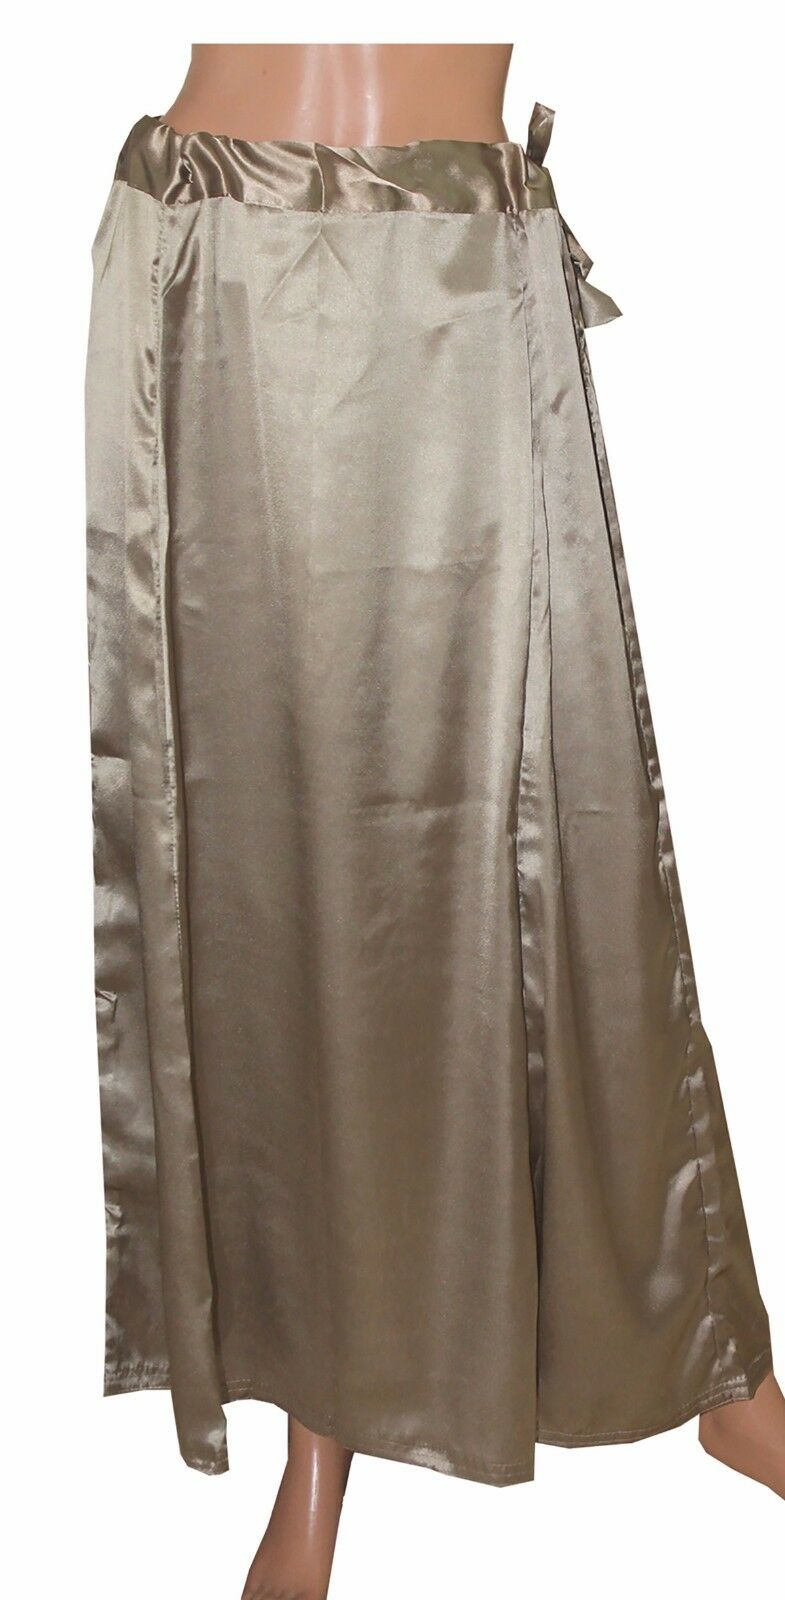 Stale Gray Satin Indian Sari saree  Petticoat Underskirt